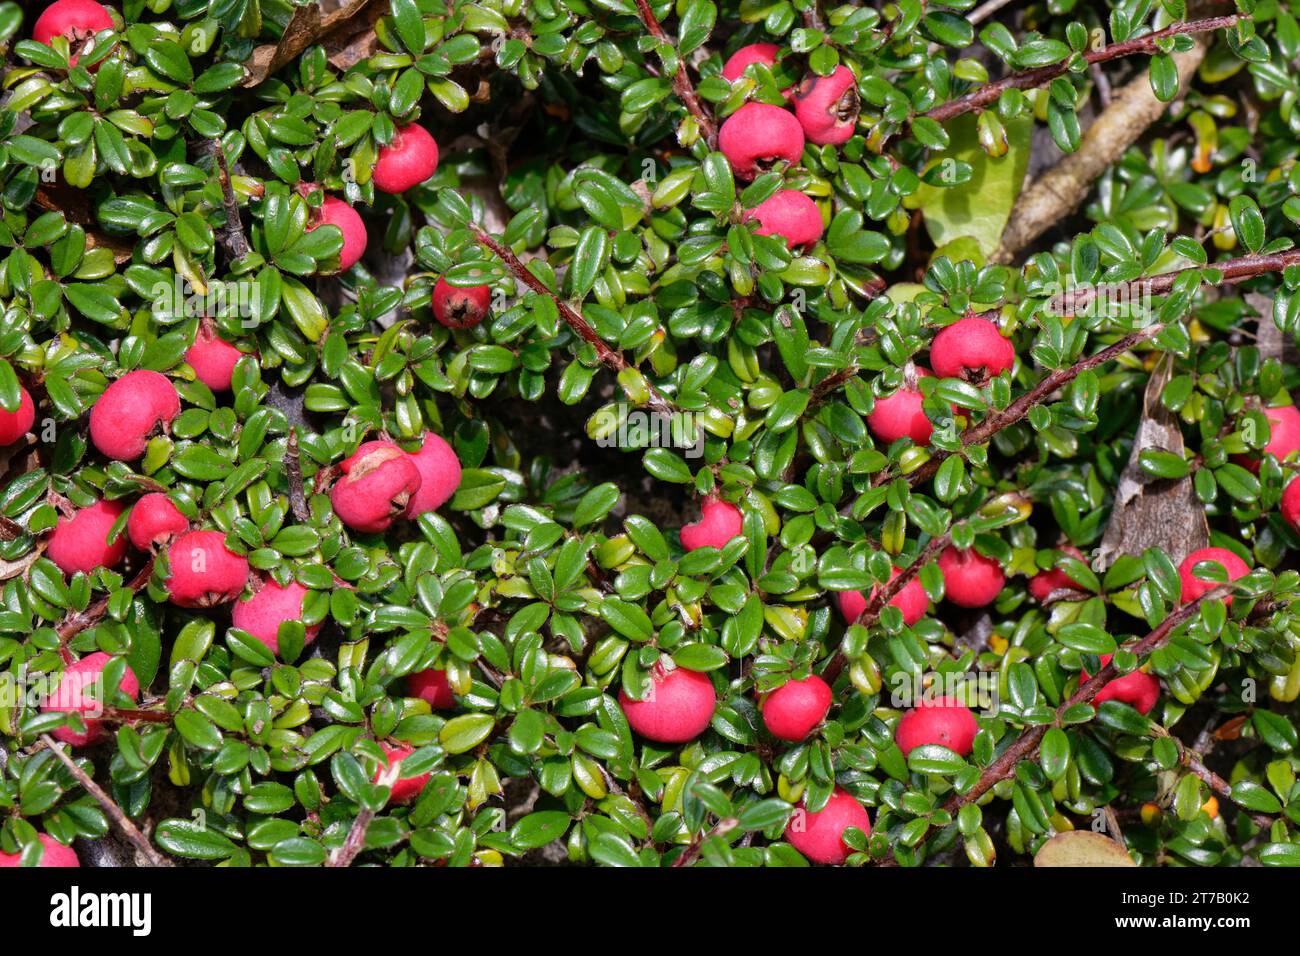 cotoneaster à feuilles entières (Cotoneaster integrifolius) avec des masses de baies rouges poussant dans une carrière abandonnée, île de Portland, Dorset, Royaume-Uni, octobre Banque D'Images